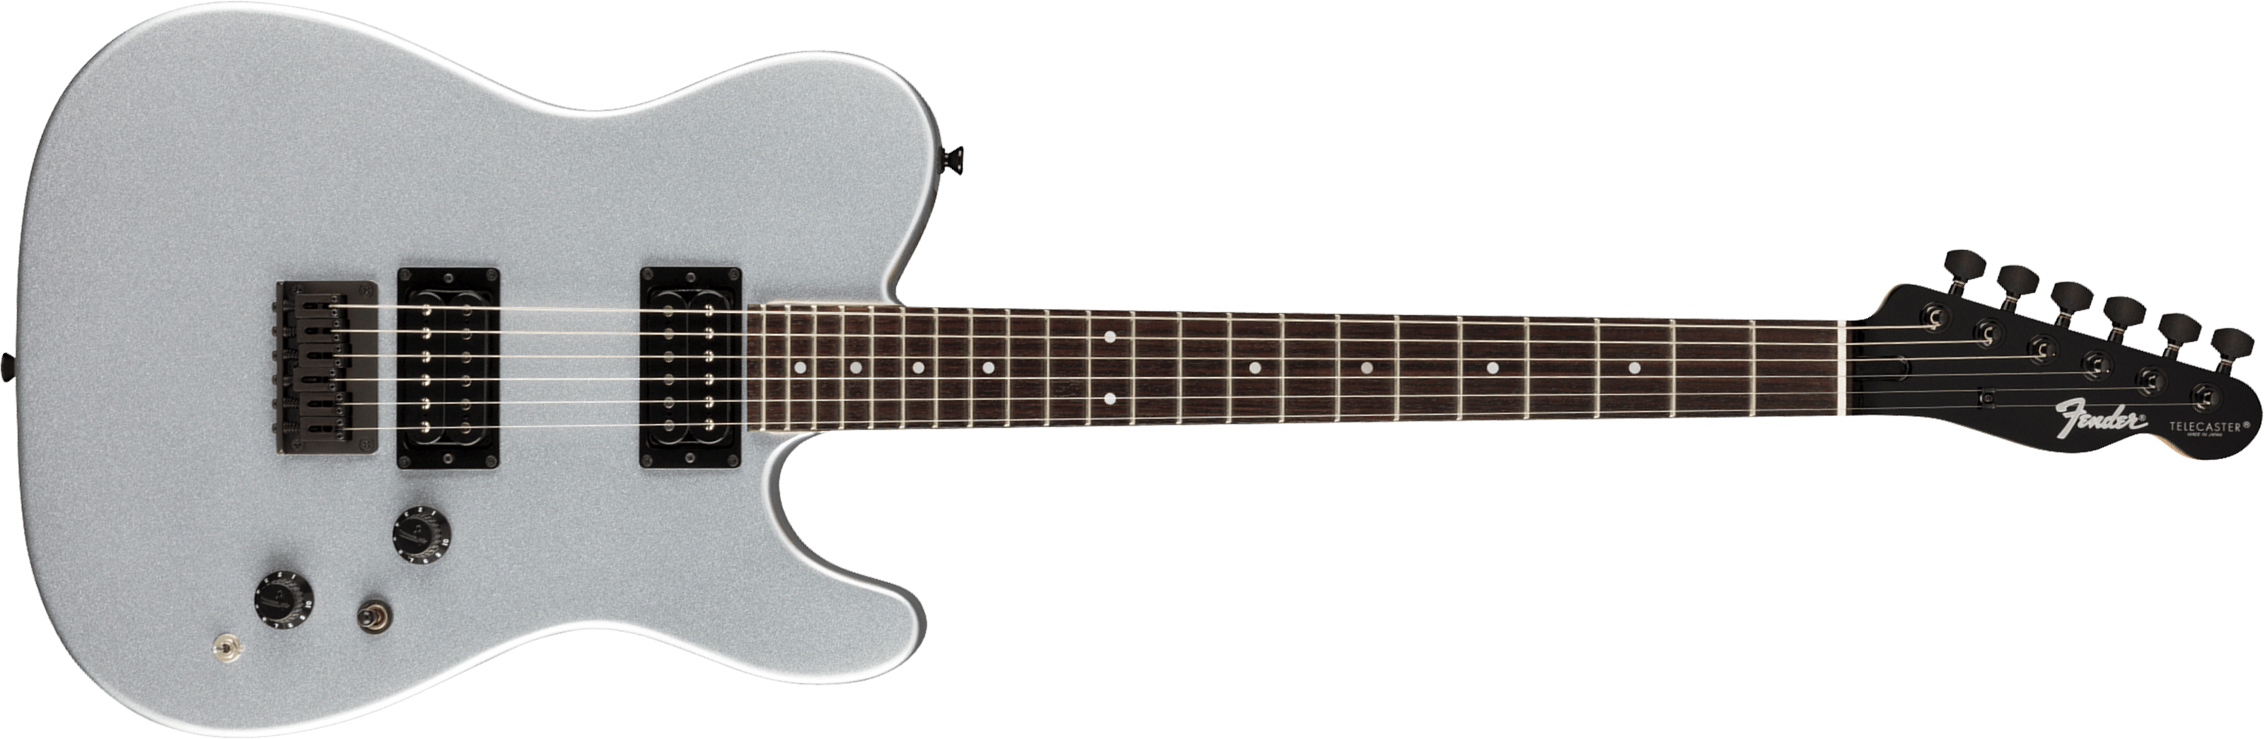 Fender Tele Boxer Hh Jap 2h Ht Rw +housse - Inca Silver - Tel shape electric guitar - Main picture